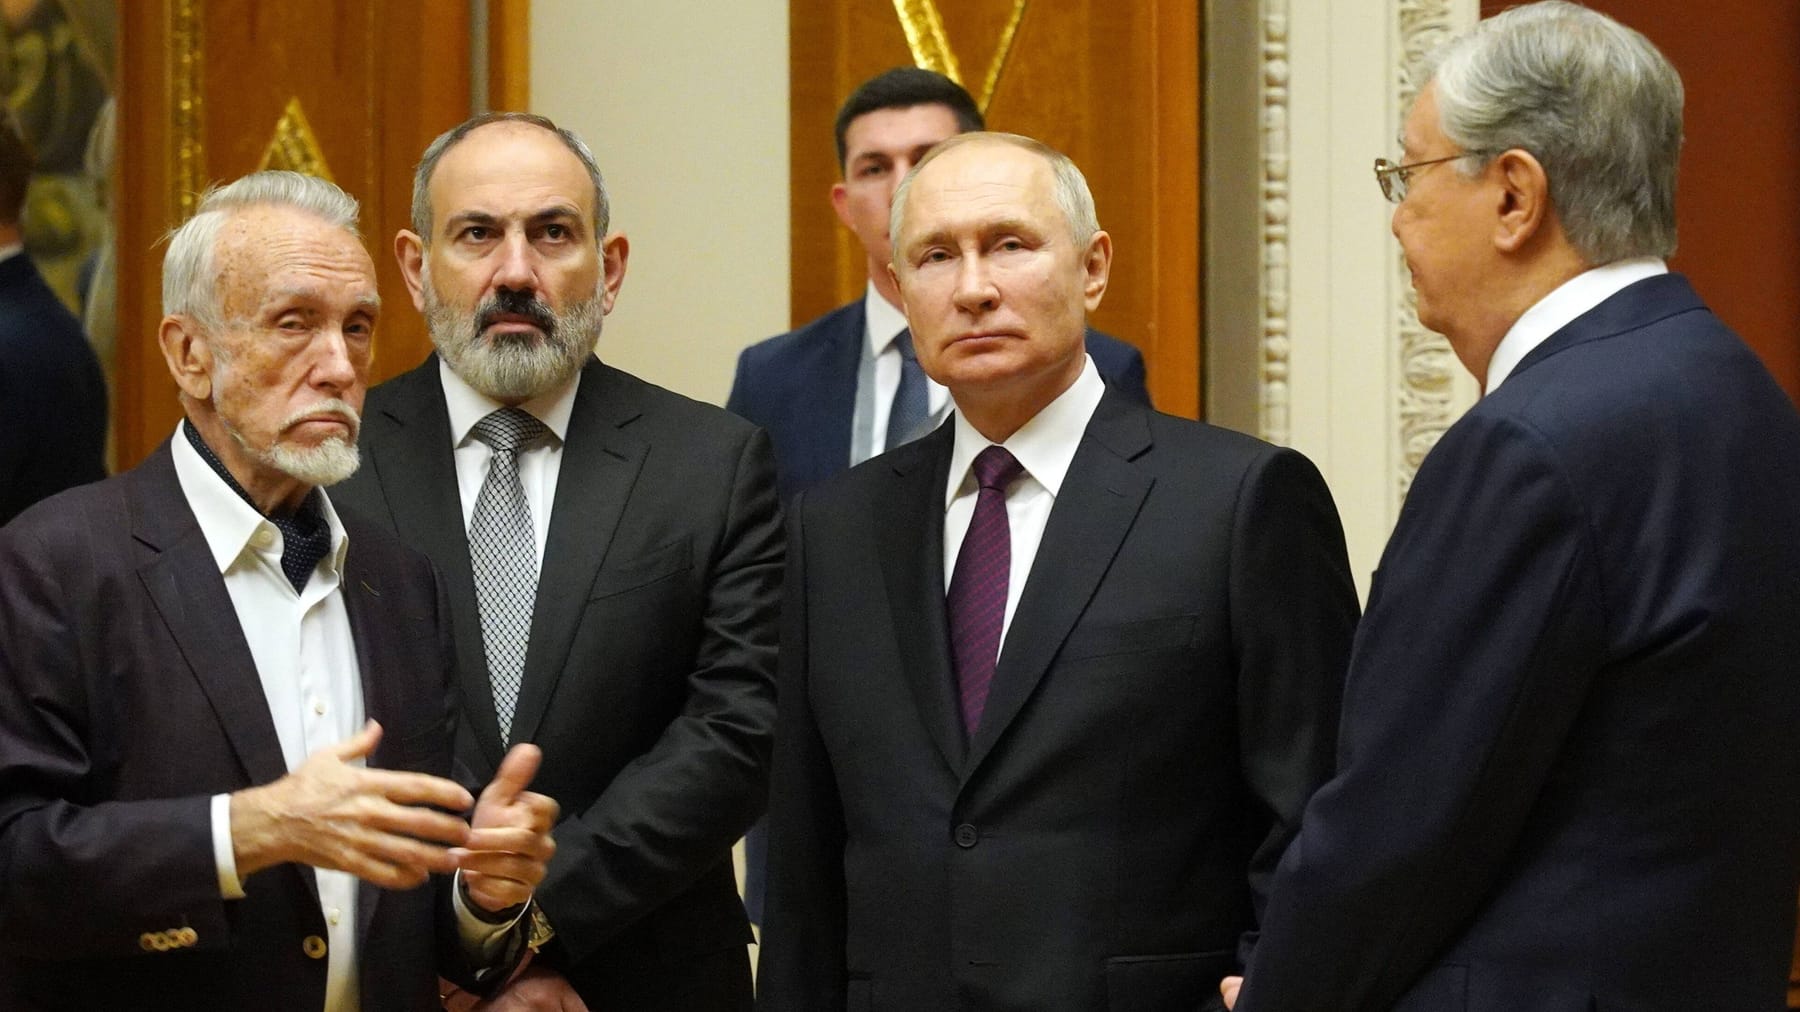 Vladimir Putin gives golden rings to allies